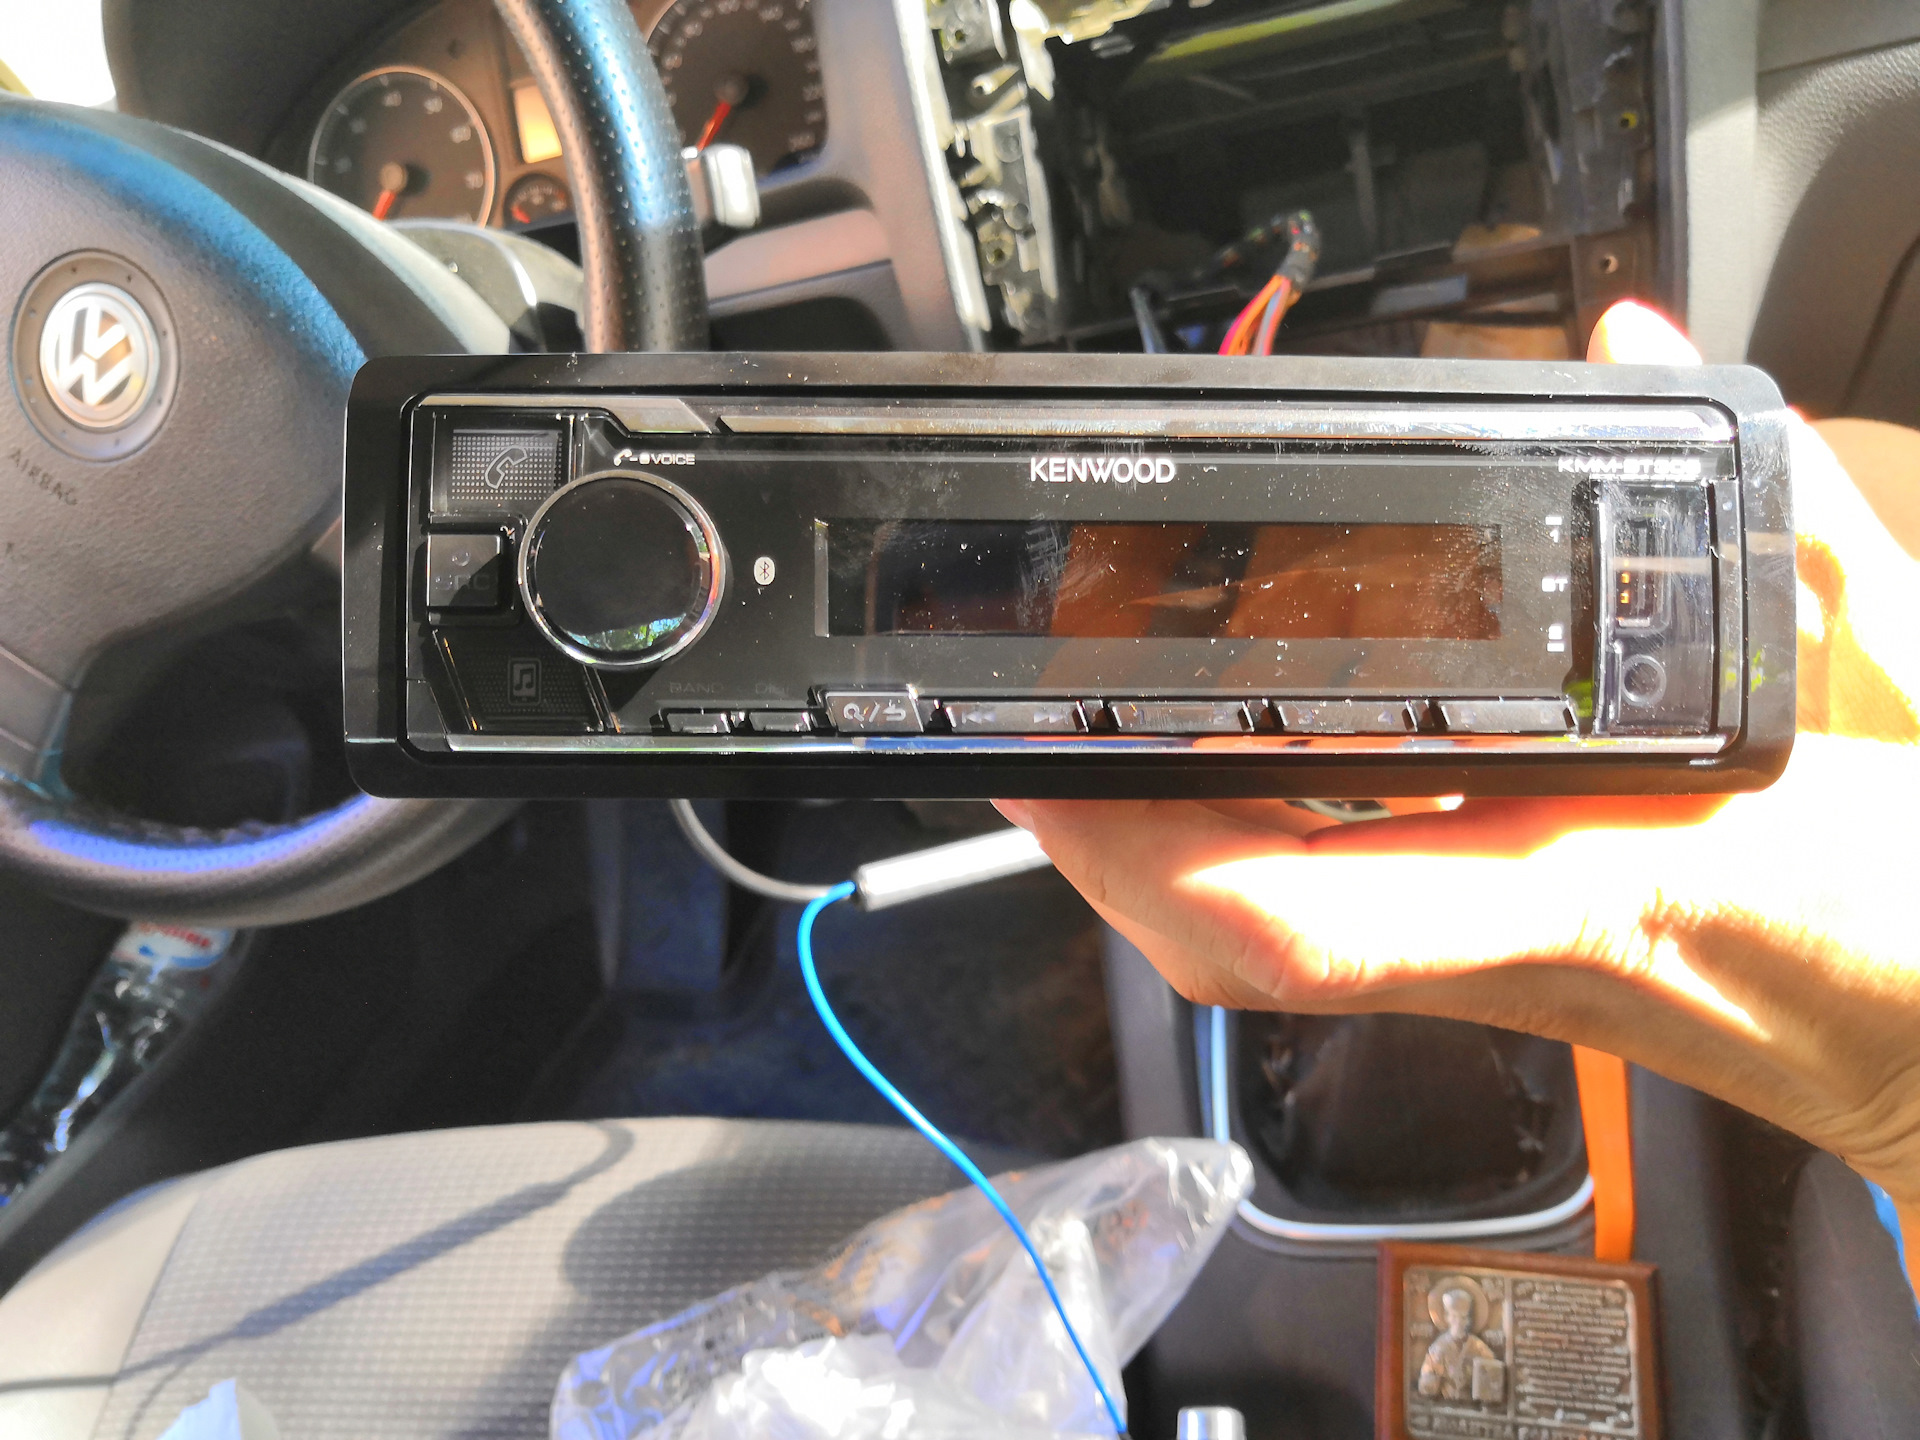 Автомагнитола kenwood kmm bt305 при выключении снова загорается экран